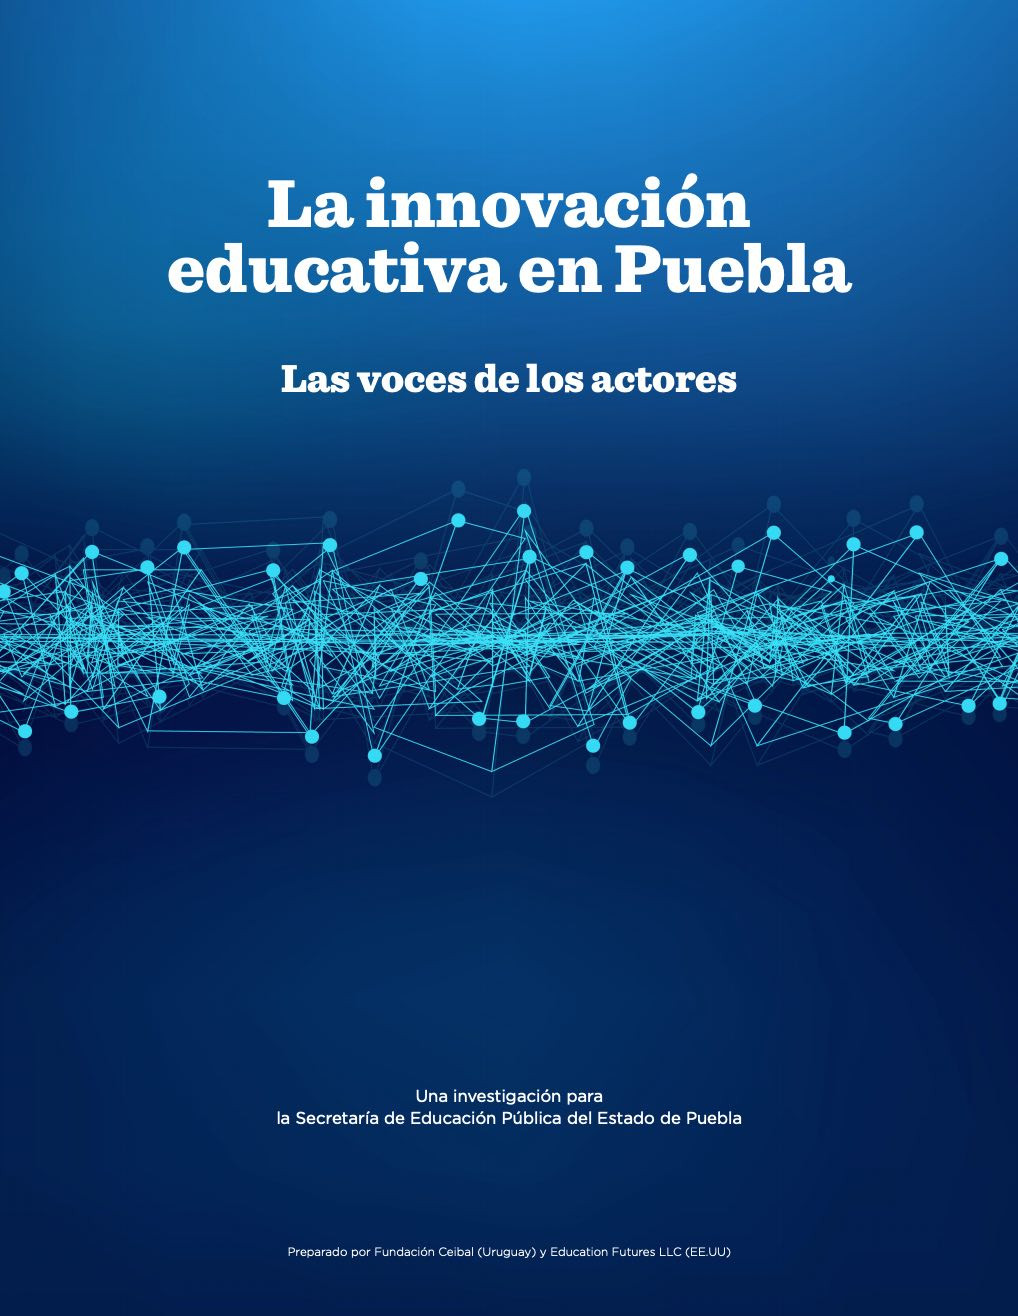 La innovación educative en Puebla